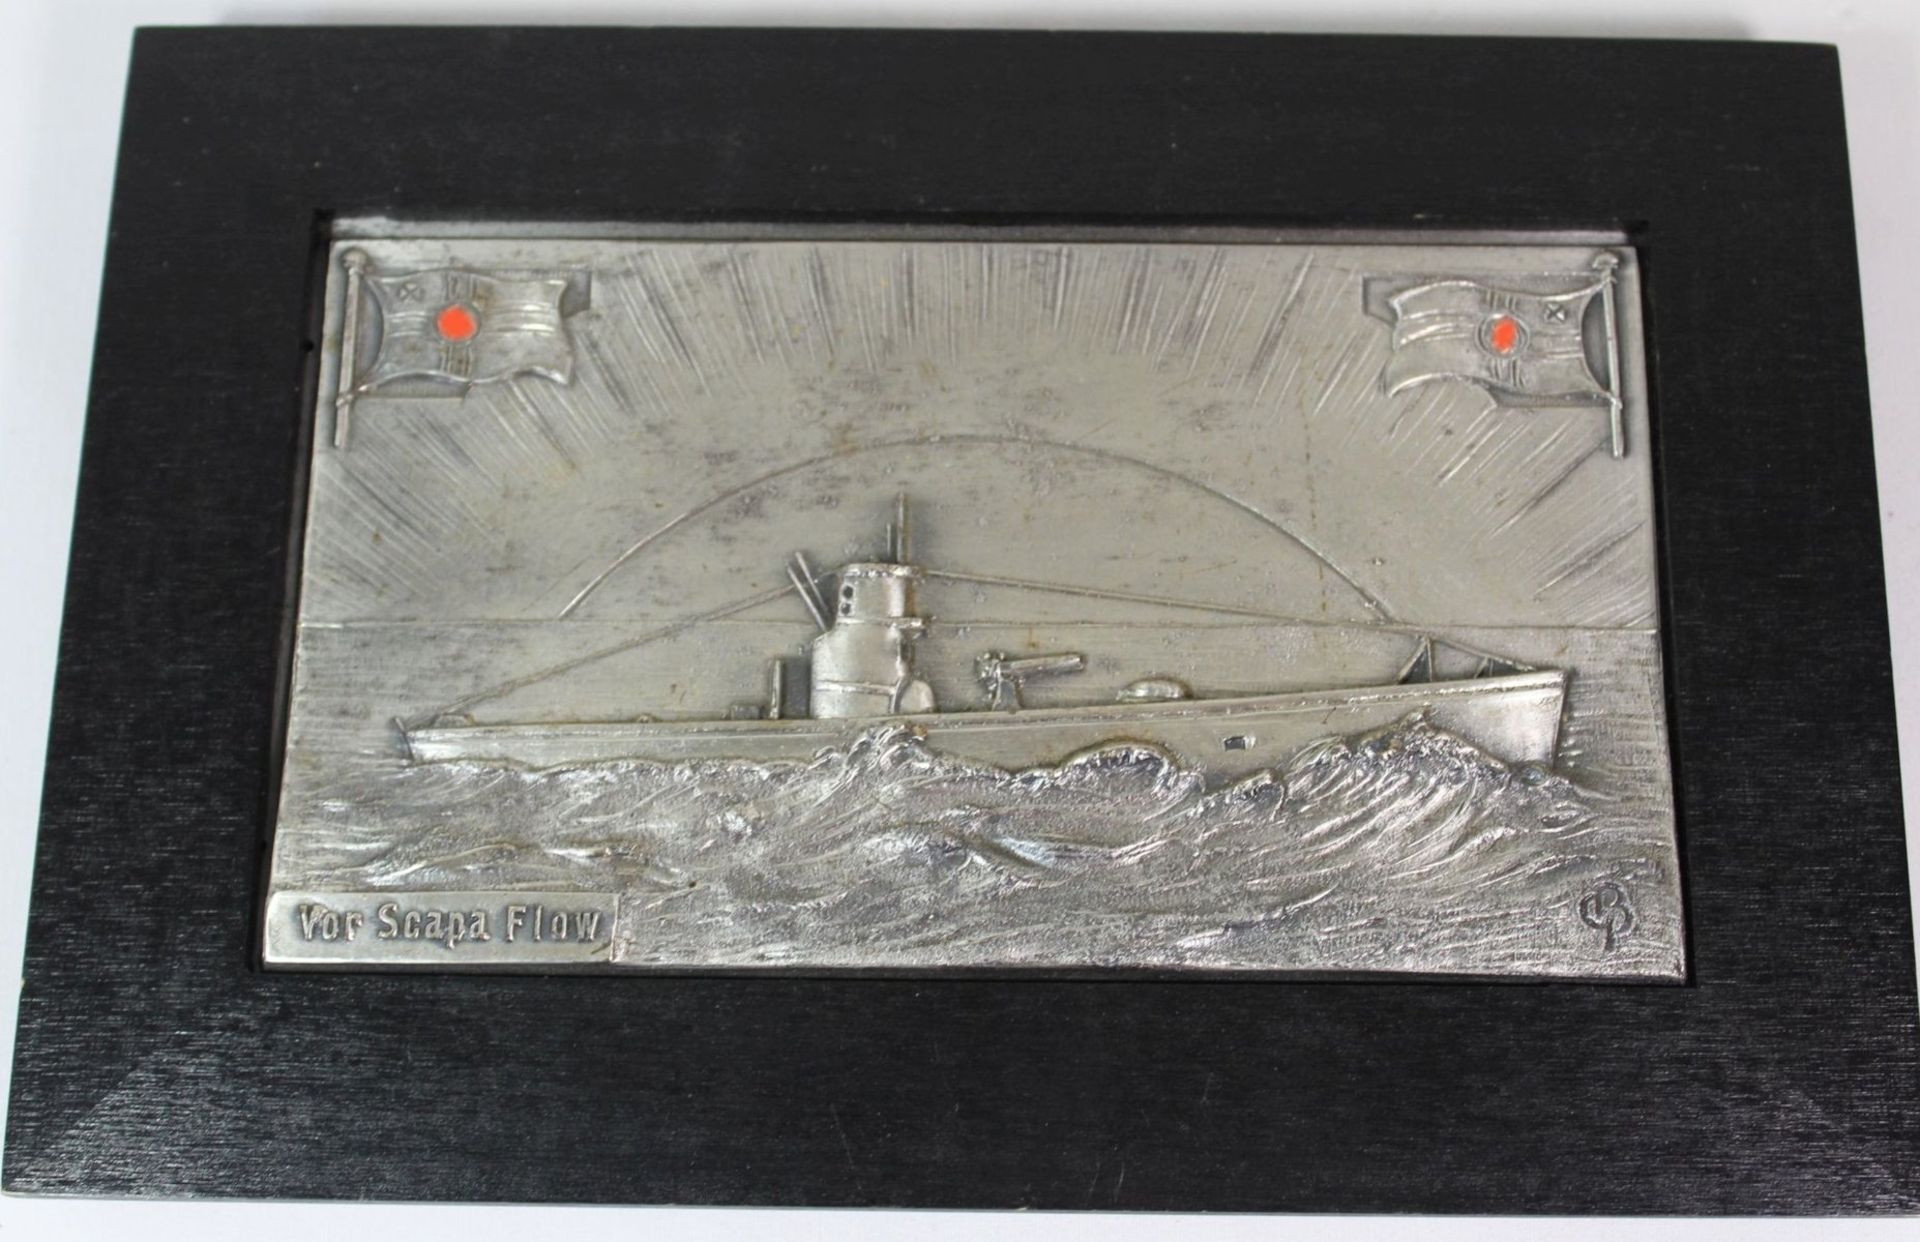 gerahmtes U-Boot- Relief, Vor Scapa Flow, monogrammiert "GB", 16 x 23,5cm.